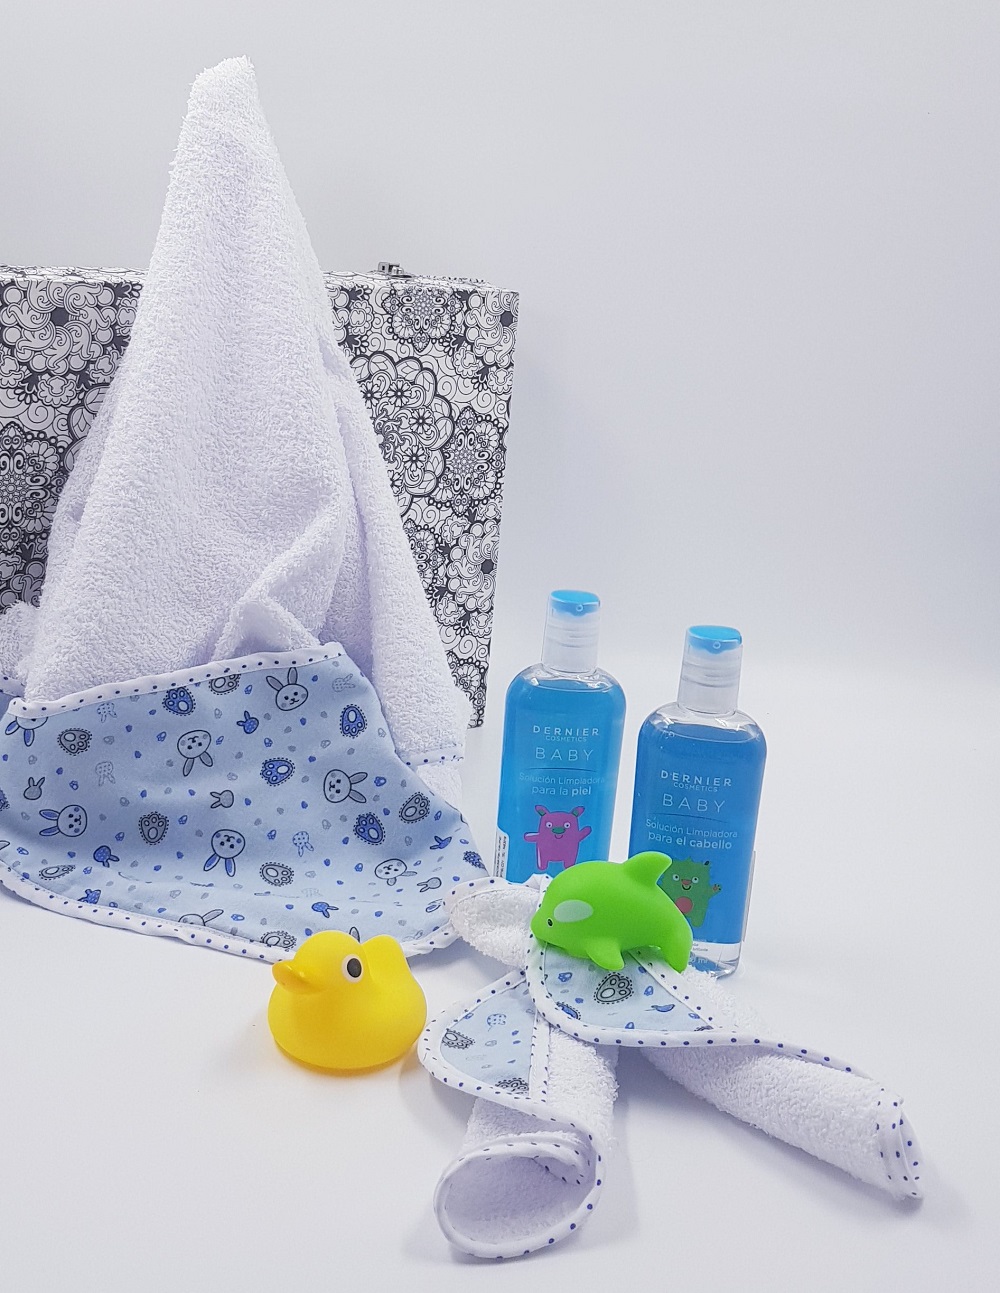 Las mejores toallas de baño para bebés, Escaparate: compras y ofertas